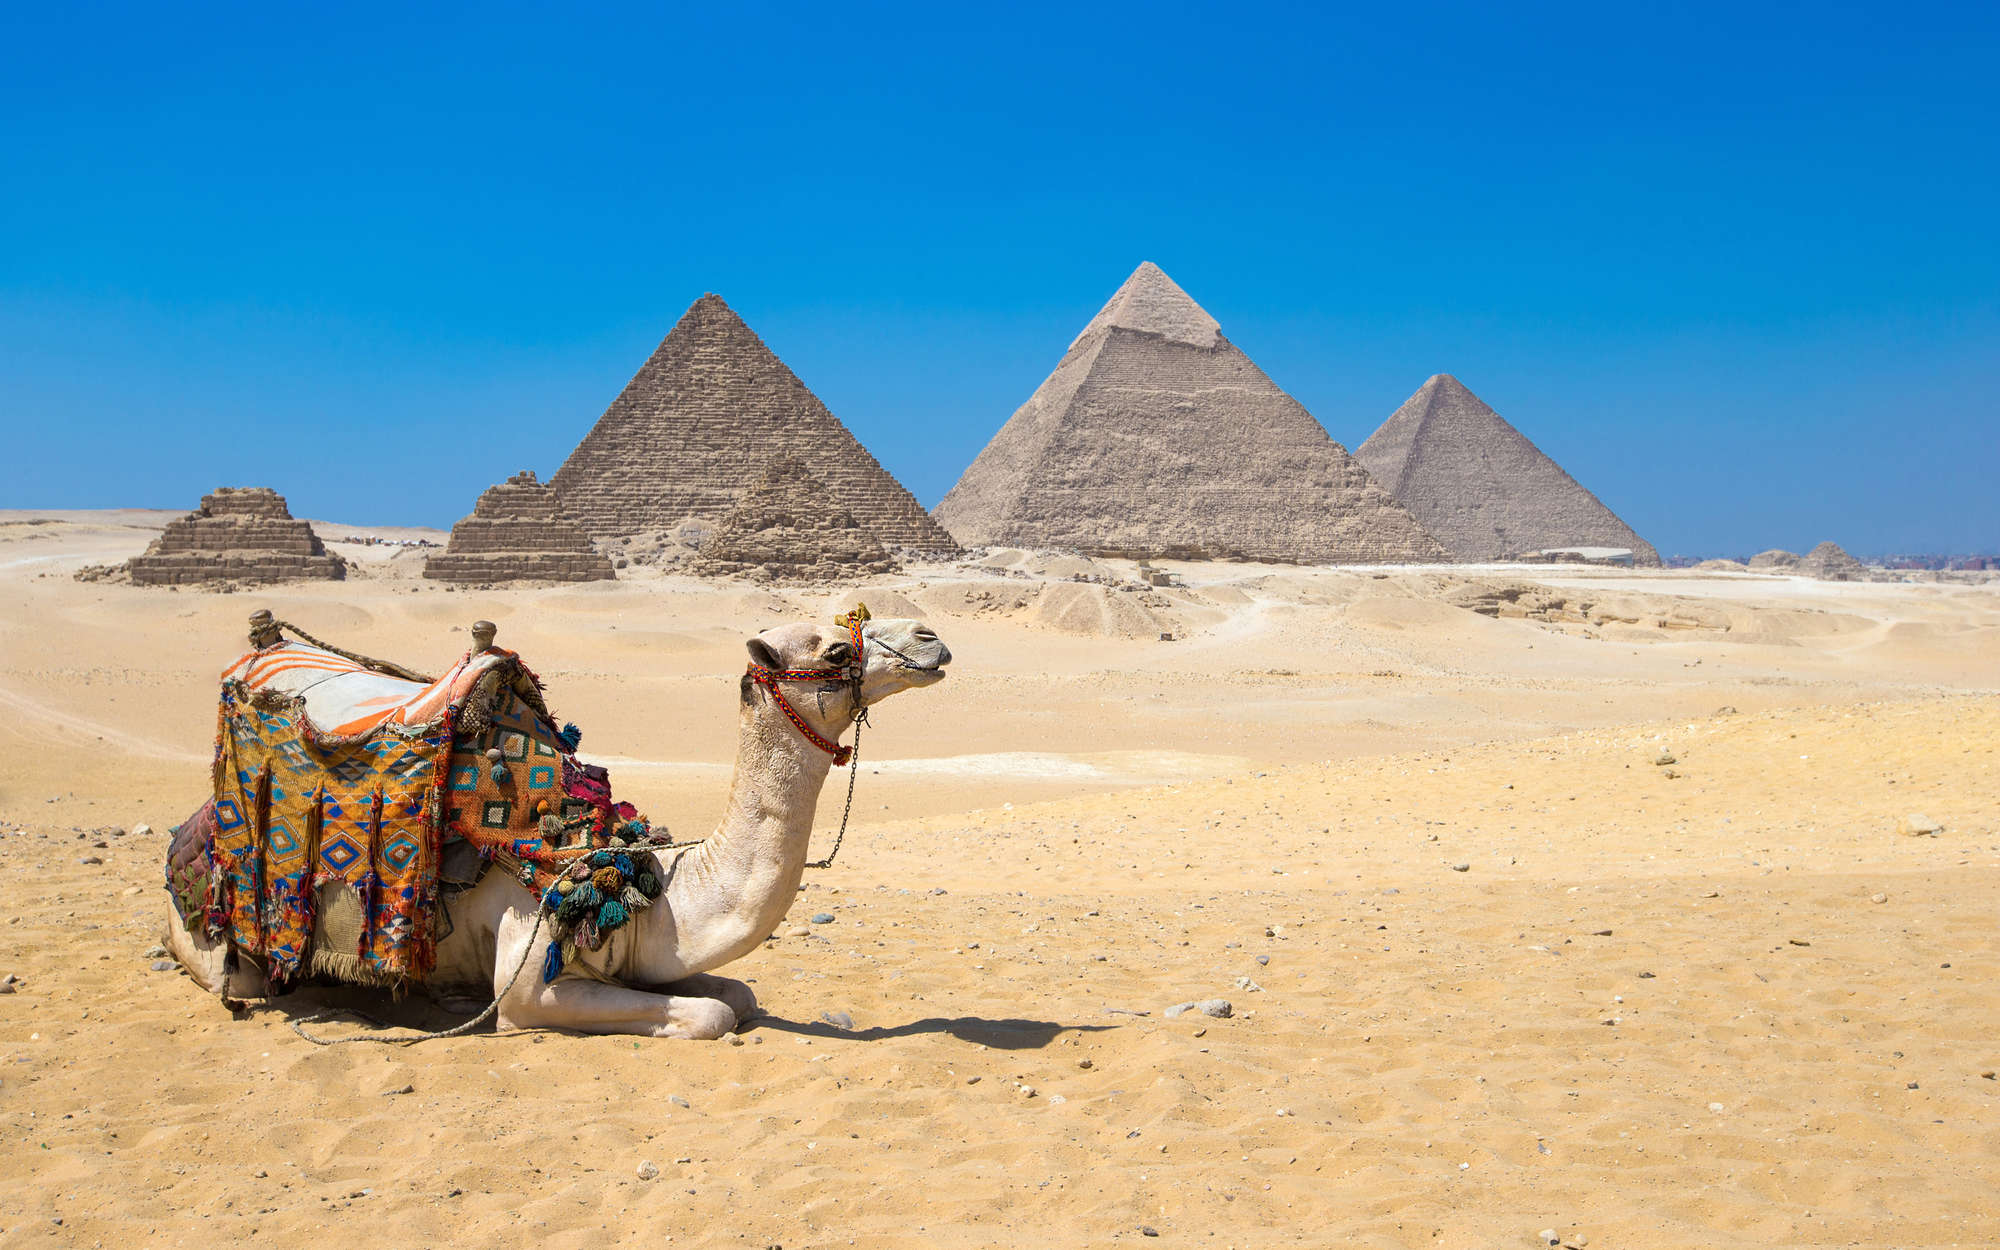             Fototapete Pyramiden von Gizeh mit Kamel – Strukturiertes Vlies
        